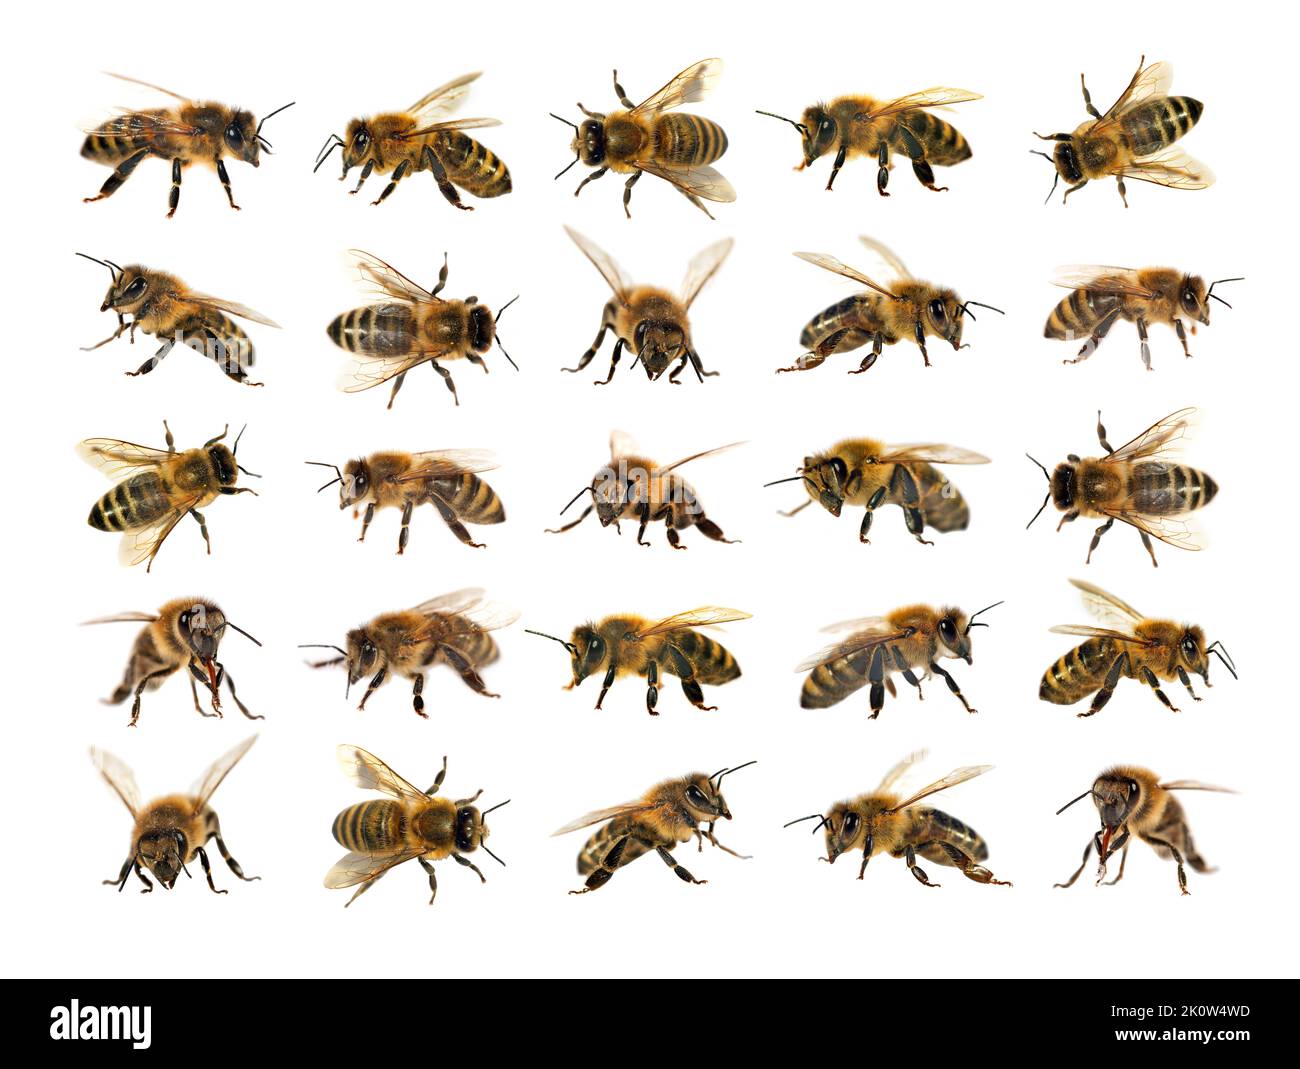 Grupo de abejas o abejas melíferas en Apis mellifera latina, abejas melíferas europeas o occidentales aisladas sobre fondo blanco, abejas melíferas doradas Foto de stock